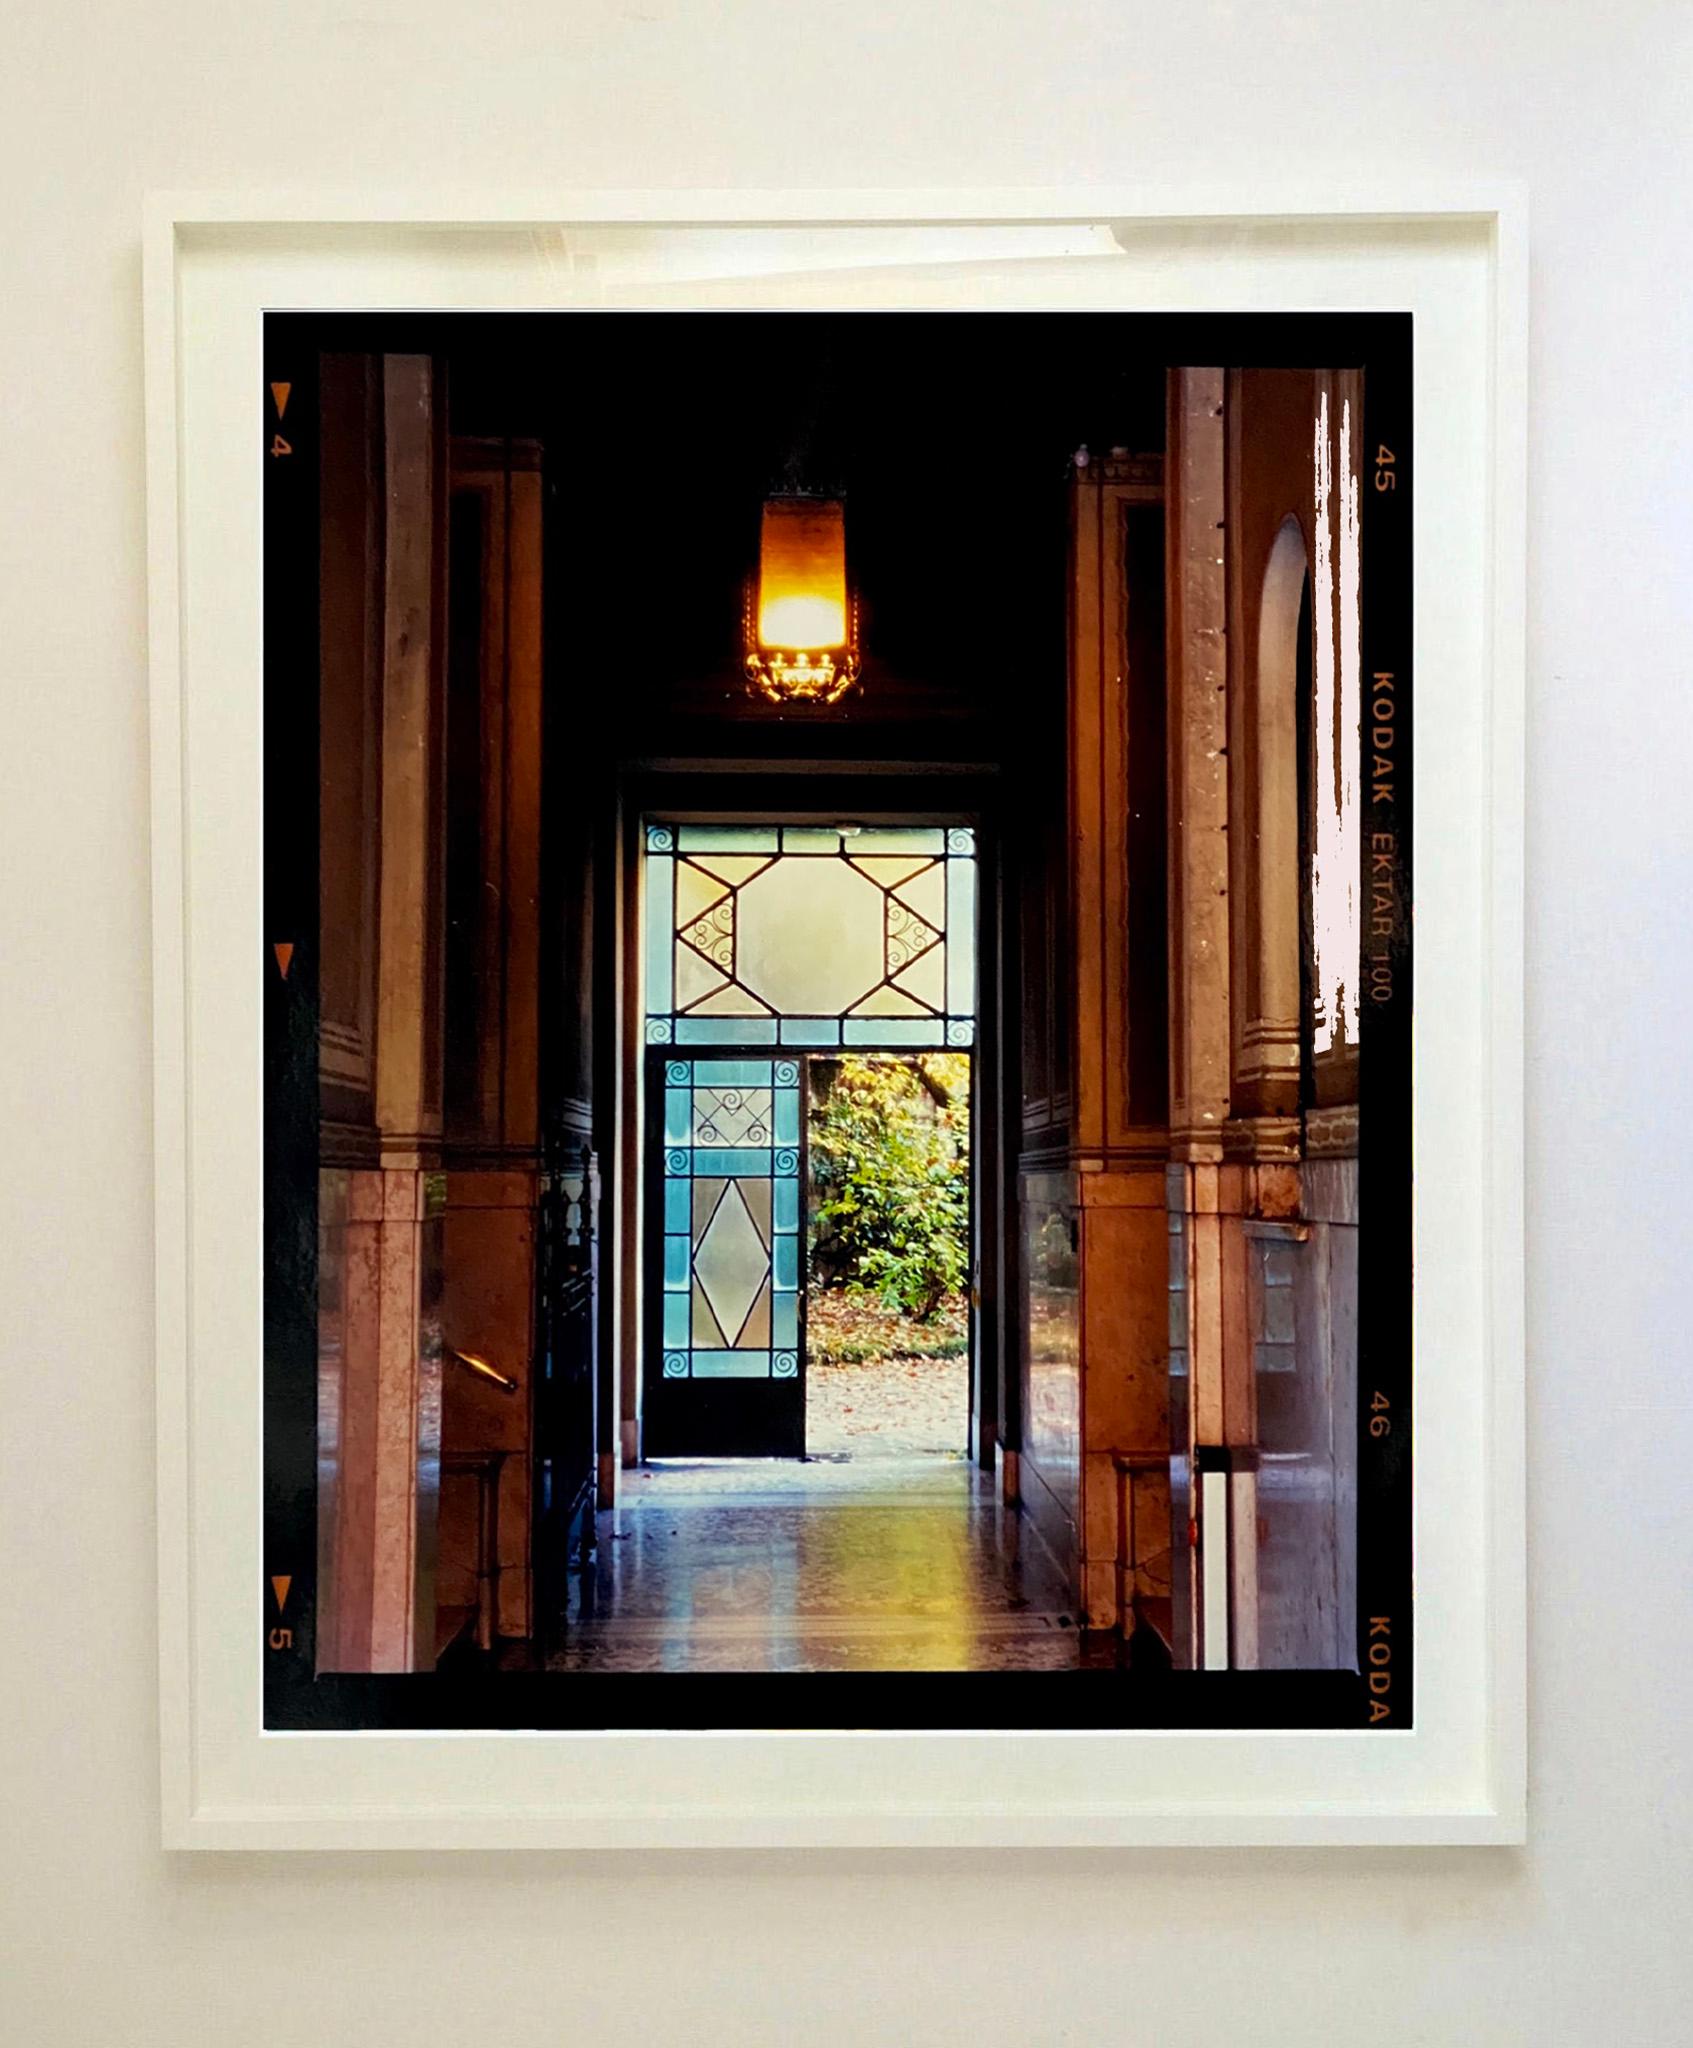 Foyer IV, Mailand – Architekturfotografie in Farbfotografie – Photograph von Richard Heeps